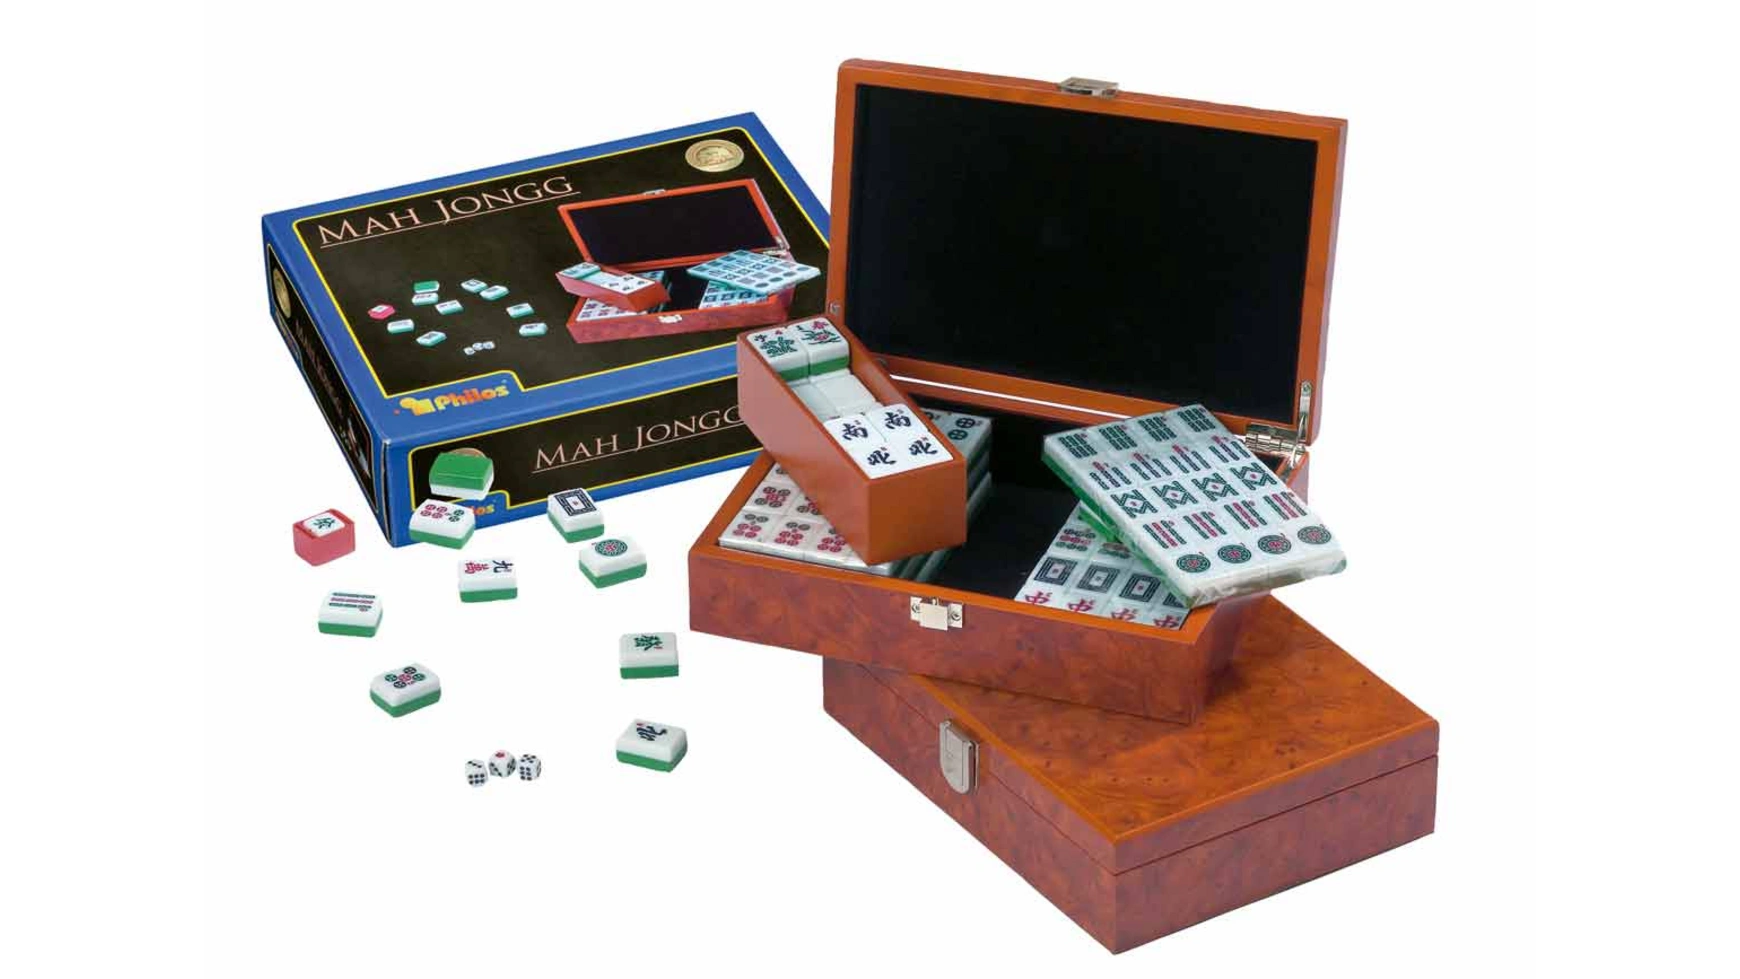 Игры mah jongg, дизайнерская коробка, с арабским языком персонаж mini chinese mahjong mah jong mahjongg mah jongg mah jongg majiang with numbered tiles accessories and wooden case